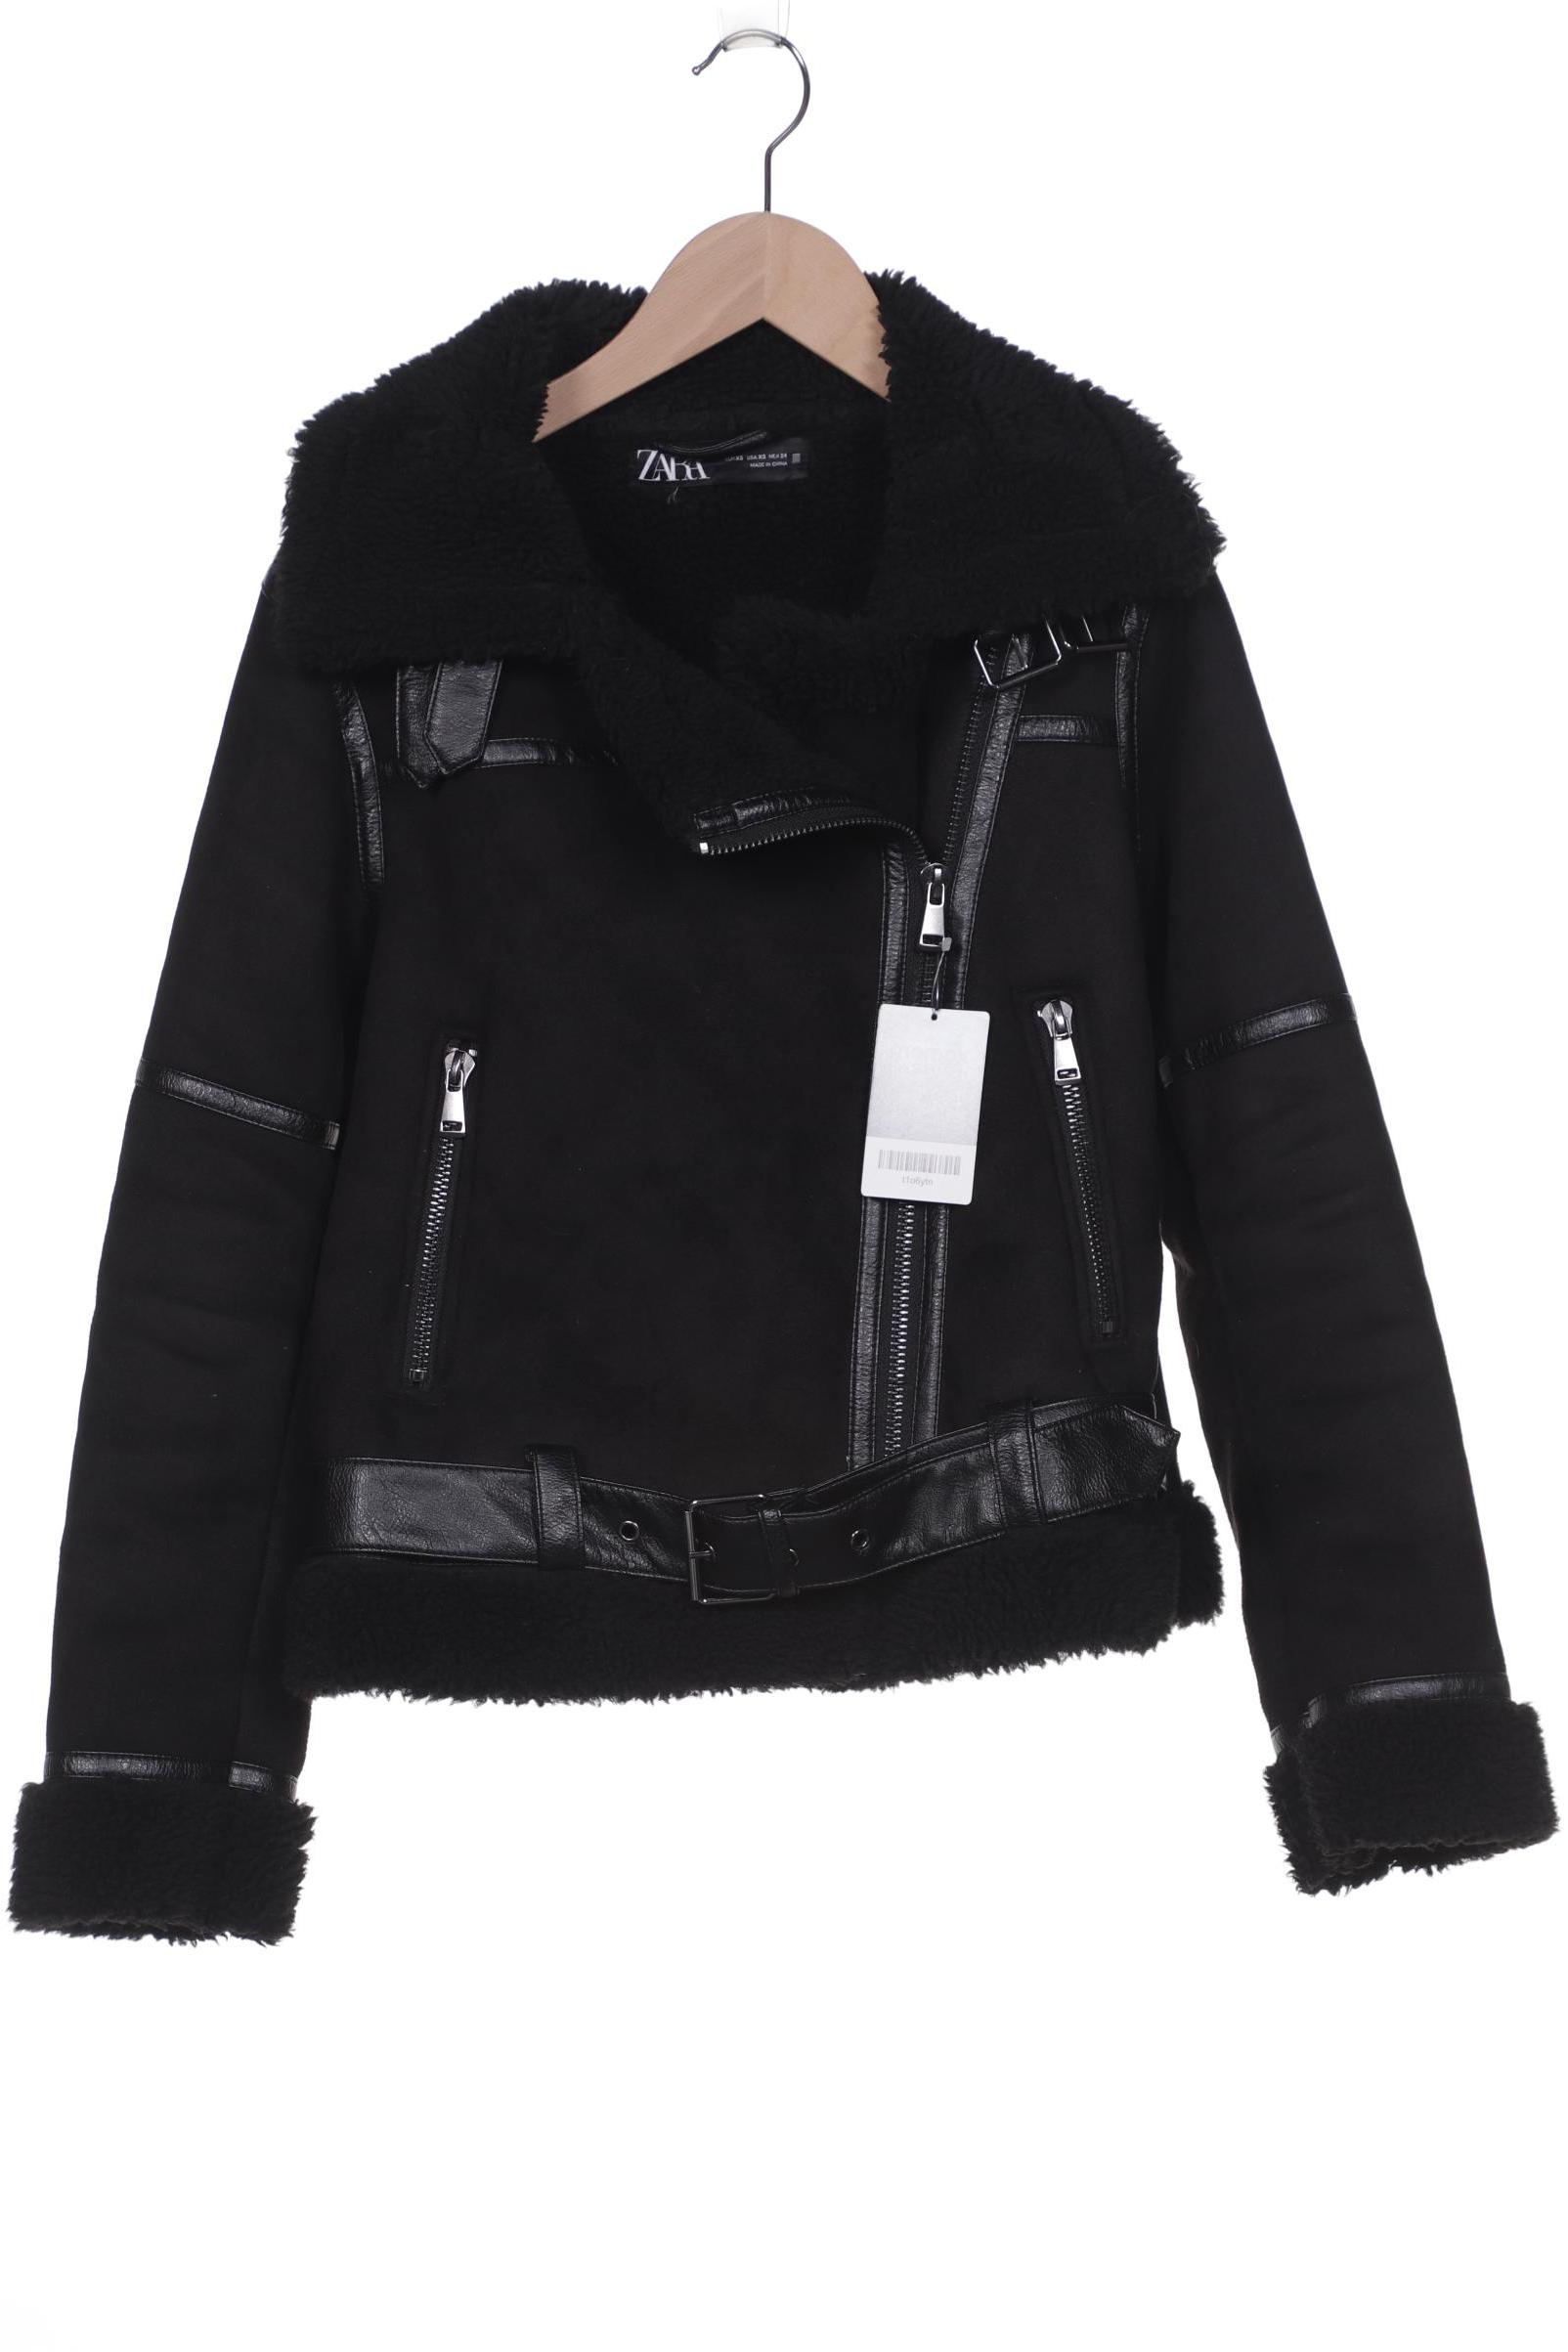 Zara Damen Jacke, schwarz, Gr. 34 von ZARA